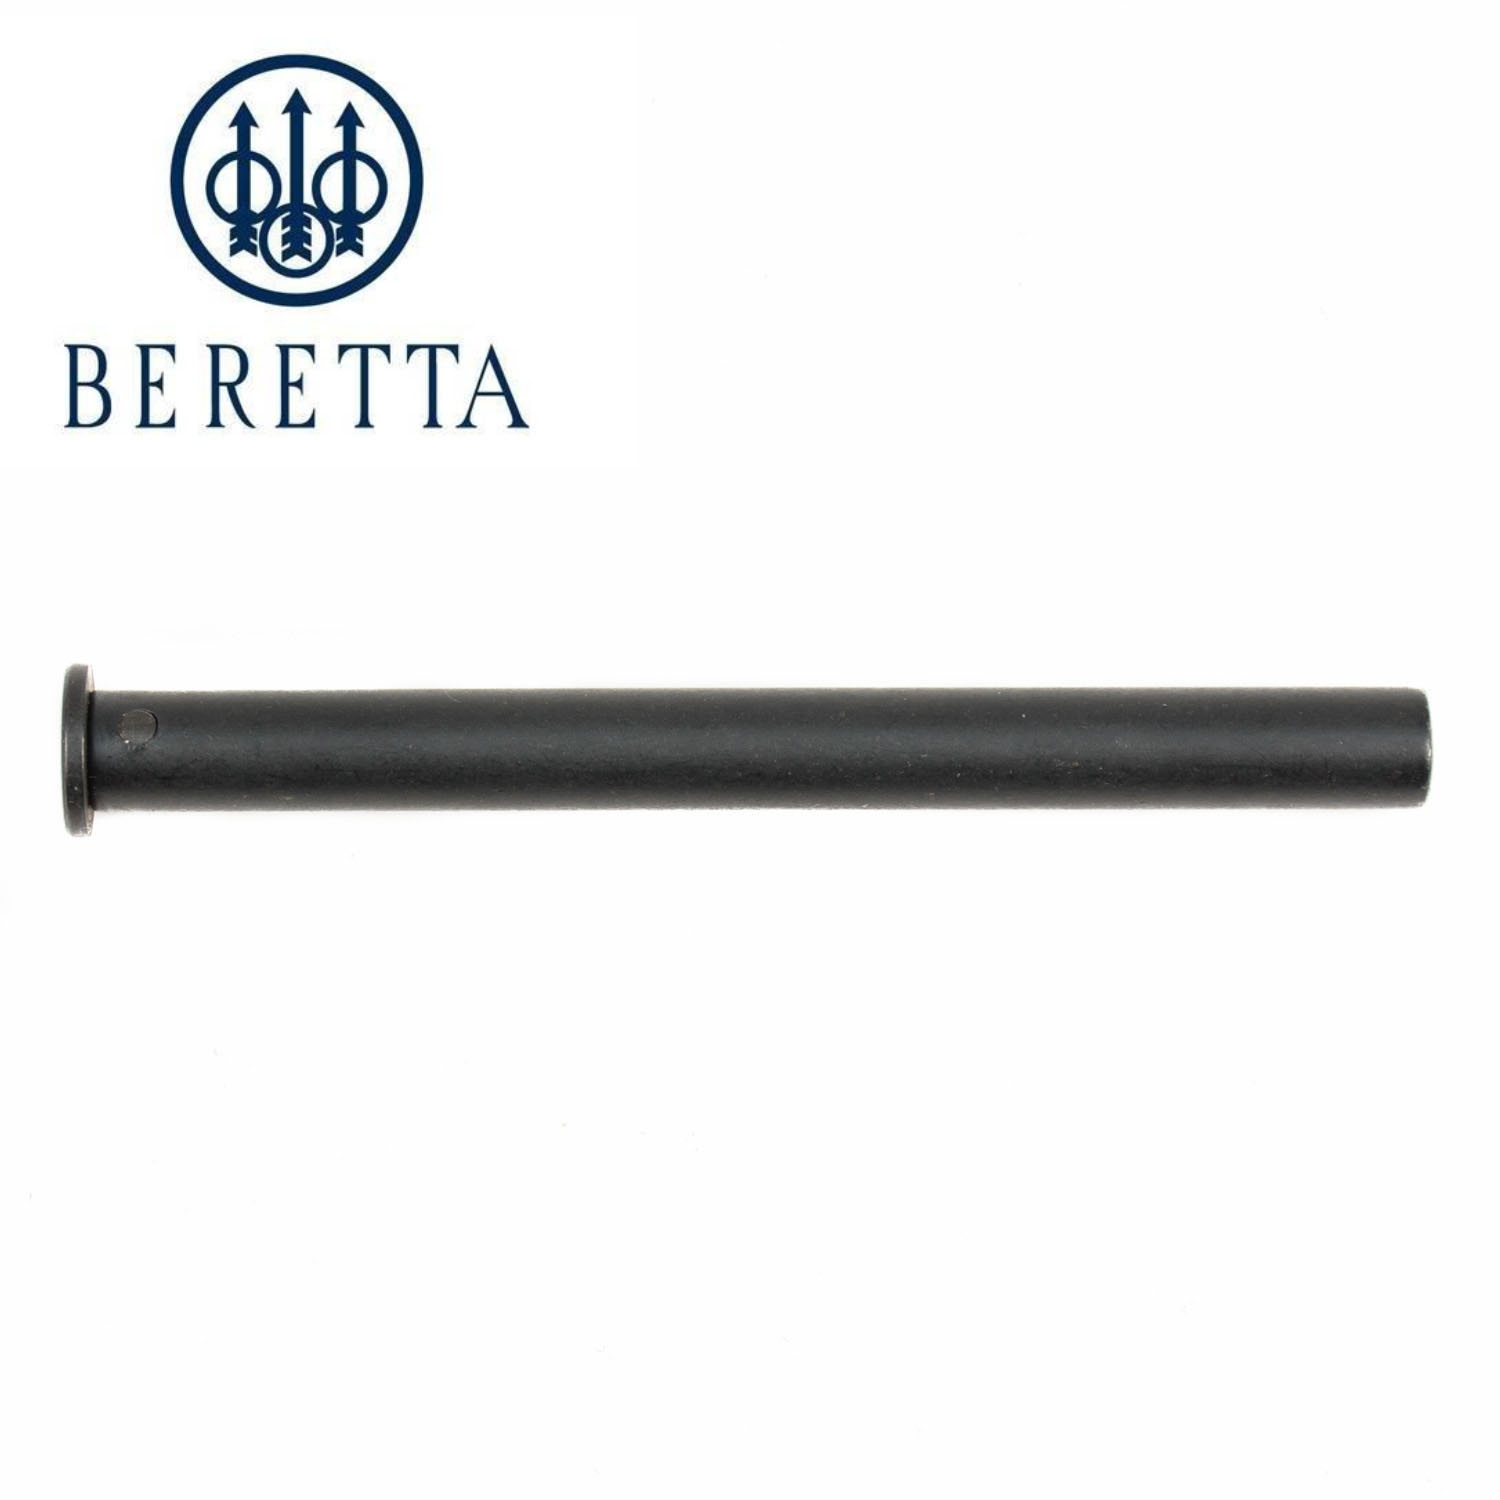 beretta 92x centurion accessories